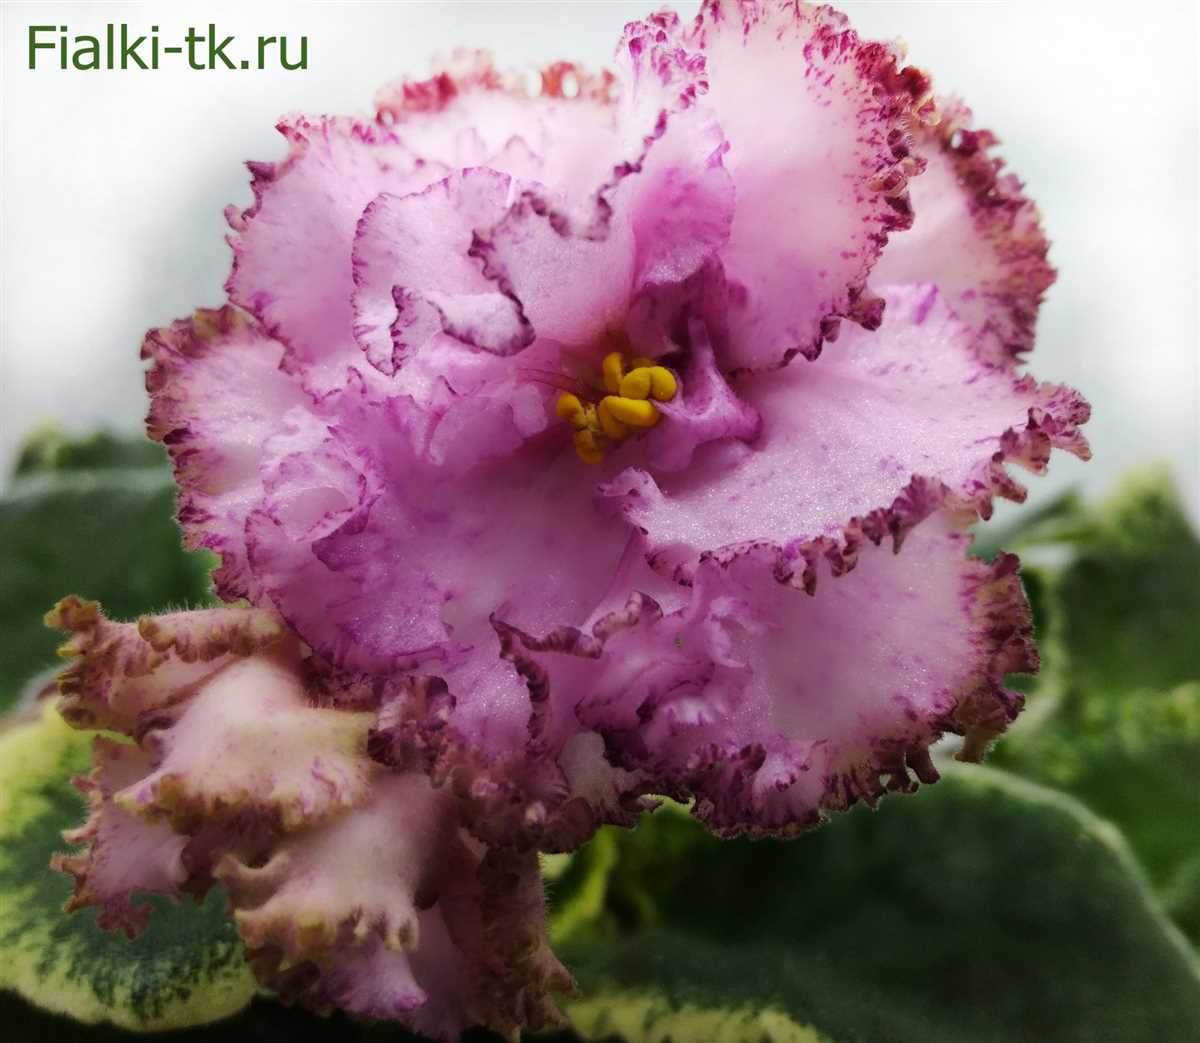 Фиалка ав дар розовой феи фото: красивые сорта